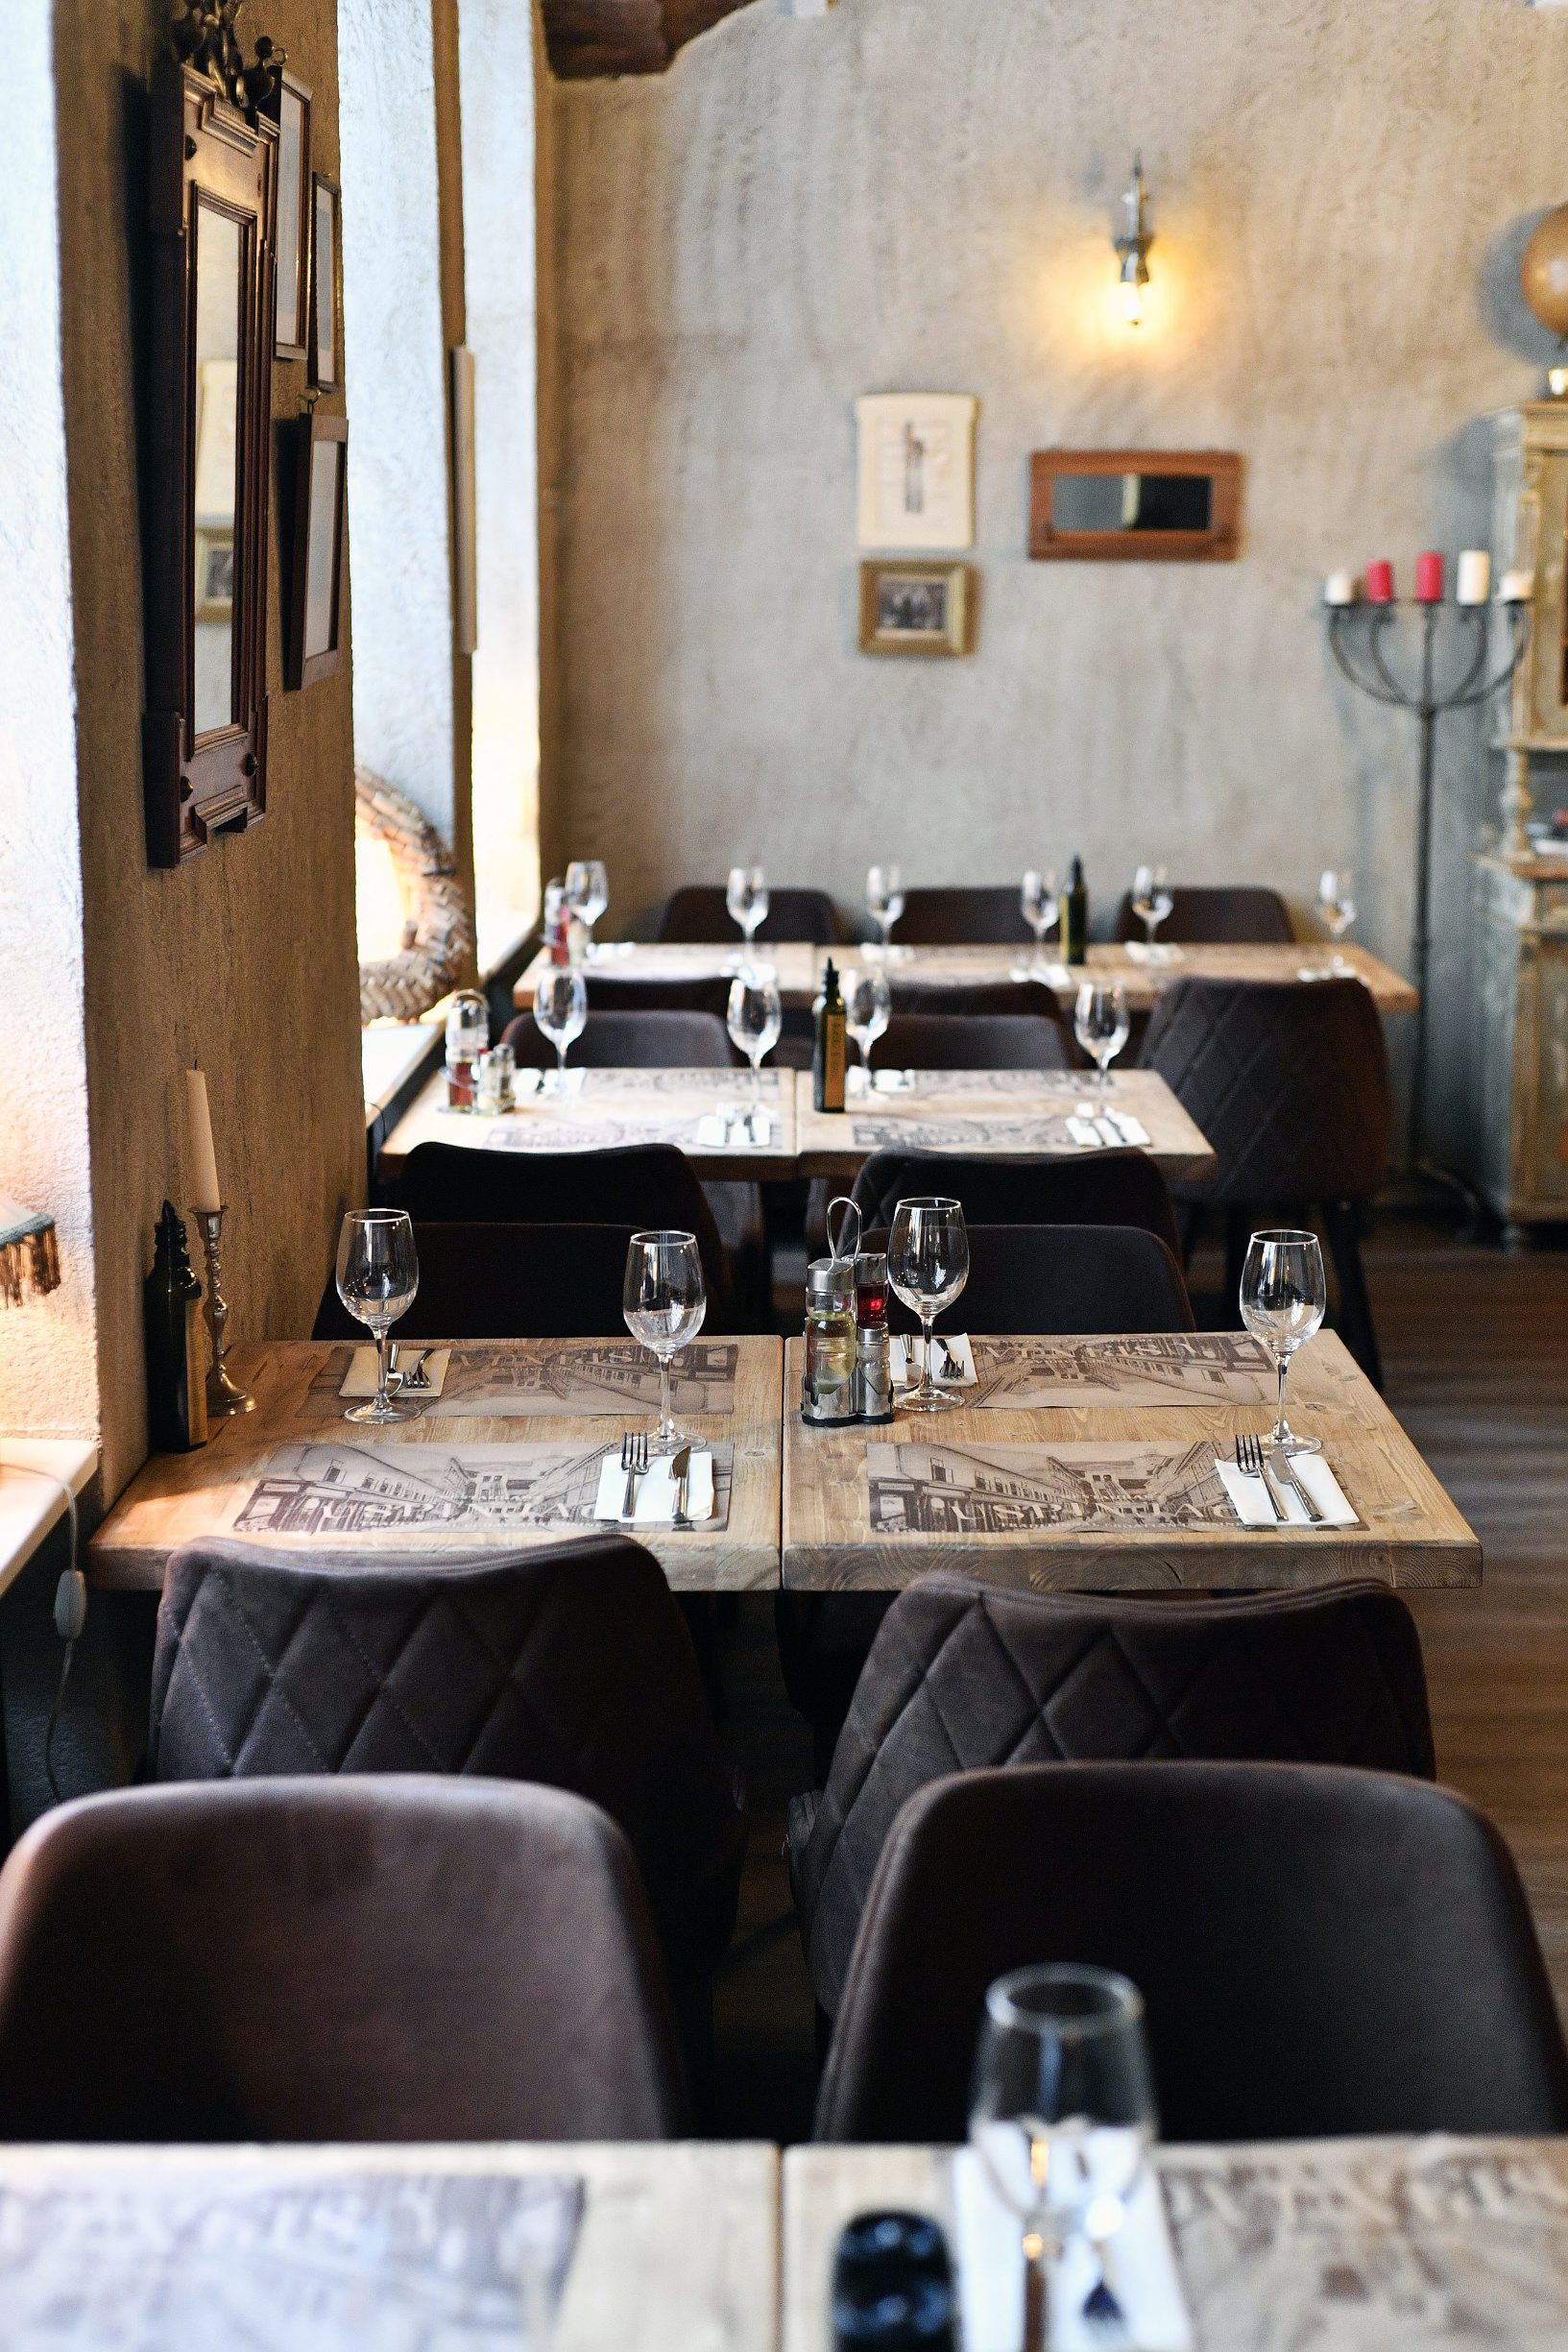 Zagreb, 160120.
Restoran Uspinjaca u Tomicevoj ulici.
Na fotografiji: interijer restorana.
Foto: Boris Kovacev / CROPIX